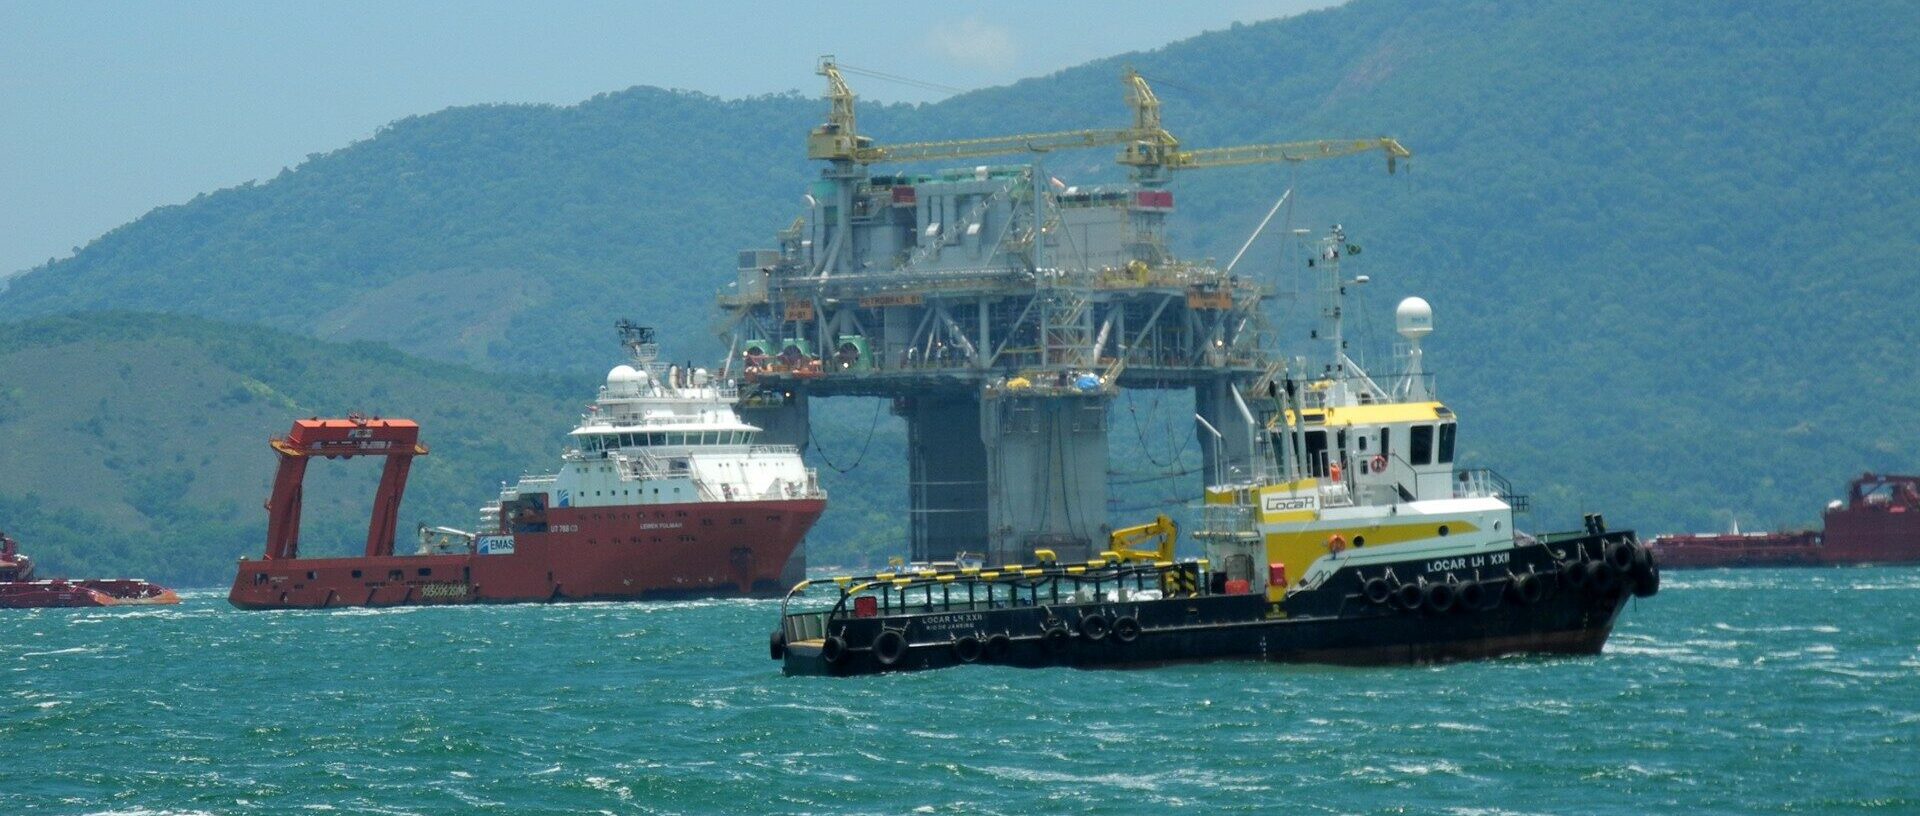 Imagem para mostrar como é uma plataforma para a extração de combustíveis fósseis no mar